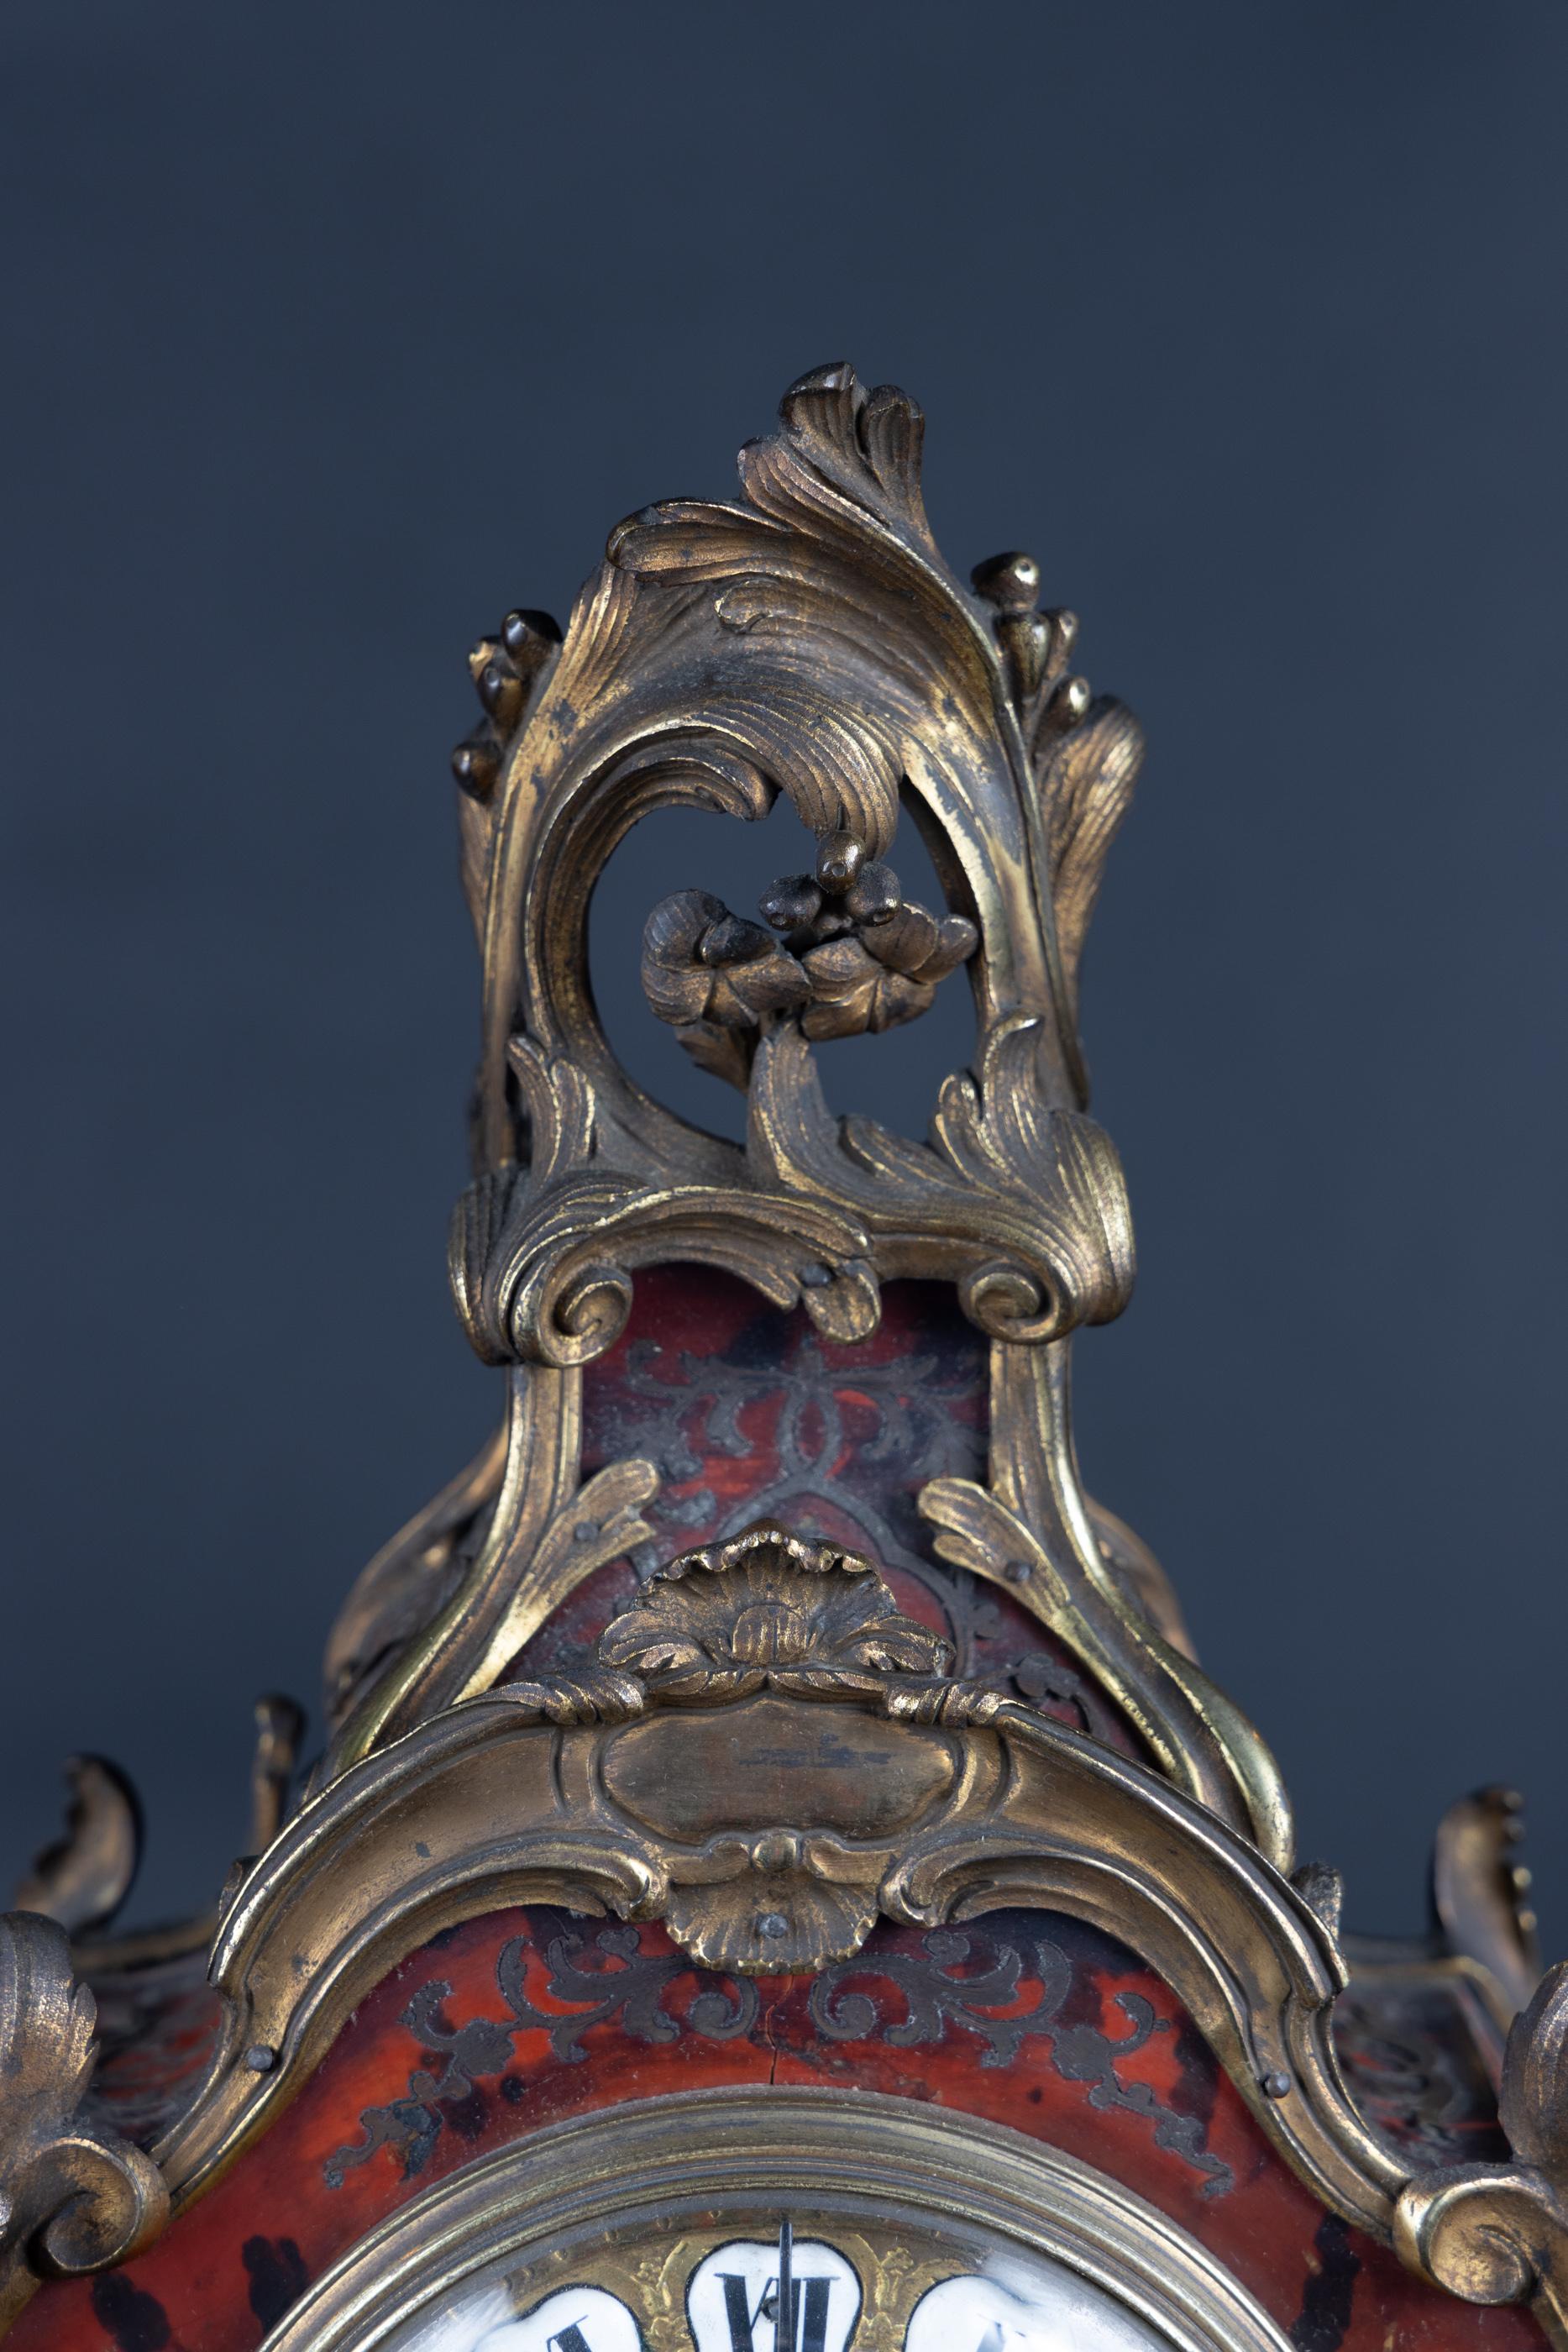 Französische Boulle-Uhr aus dem 18. Jahrhundert auf Boulle-Ständer. Die Louis-XV-Uhr hat Bronzebeschläge mit emaillierten römischen Ziffern für jede Stunde.  Das Pendel ist durch ein Glas unter dem Zifferblatt zu sehen.  Auf beiden Seiten befindet